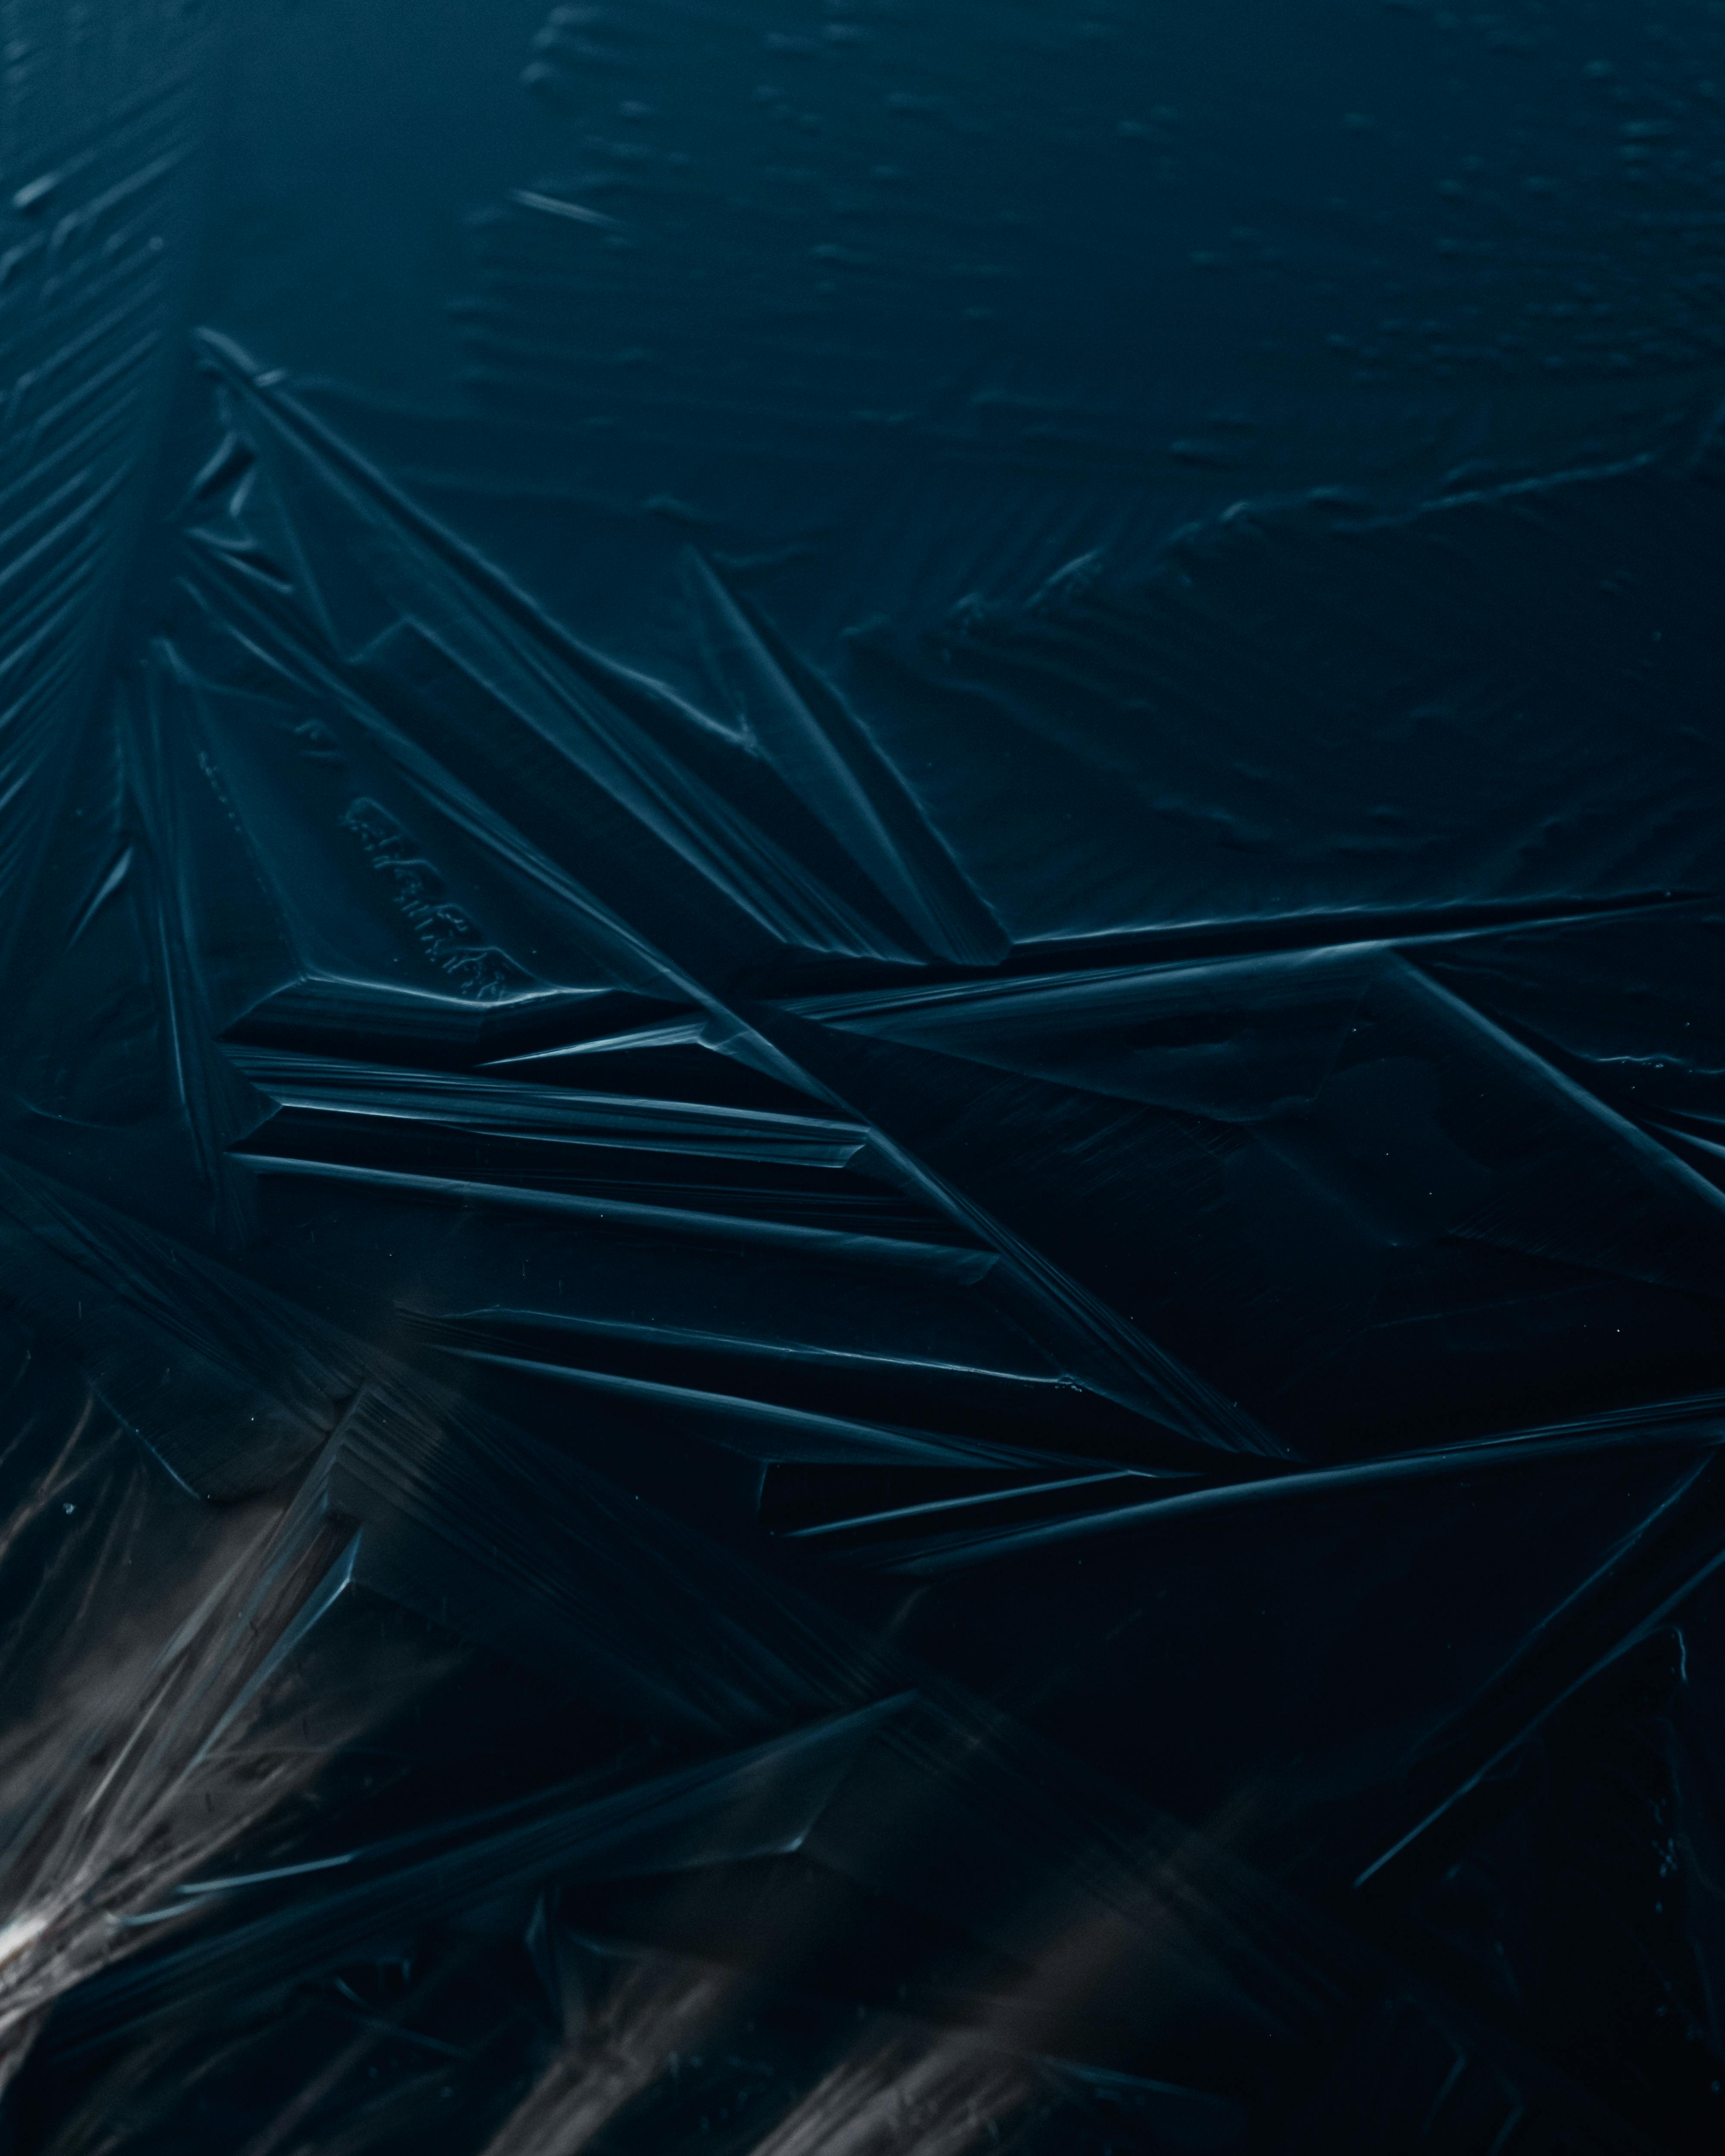 Free stock photo of dark background, dark blue background, frozen lake,  ice, textured background